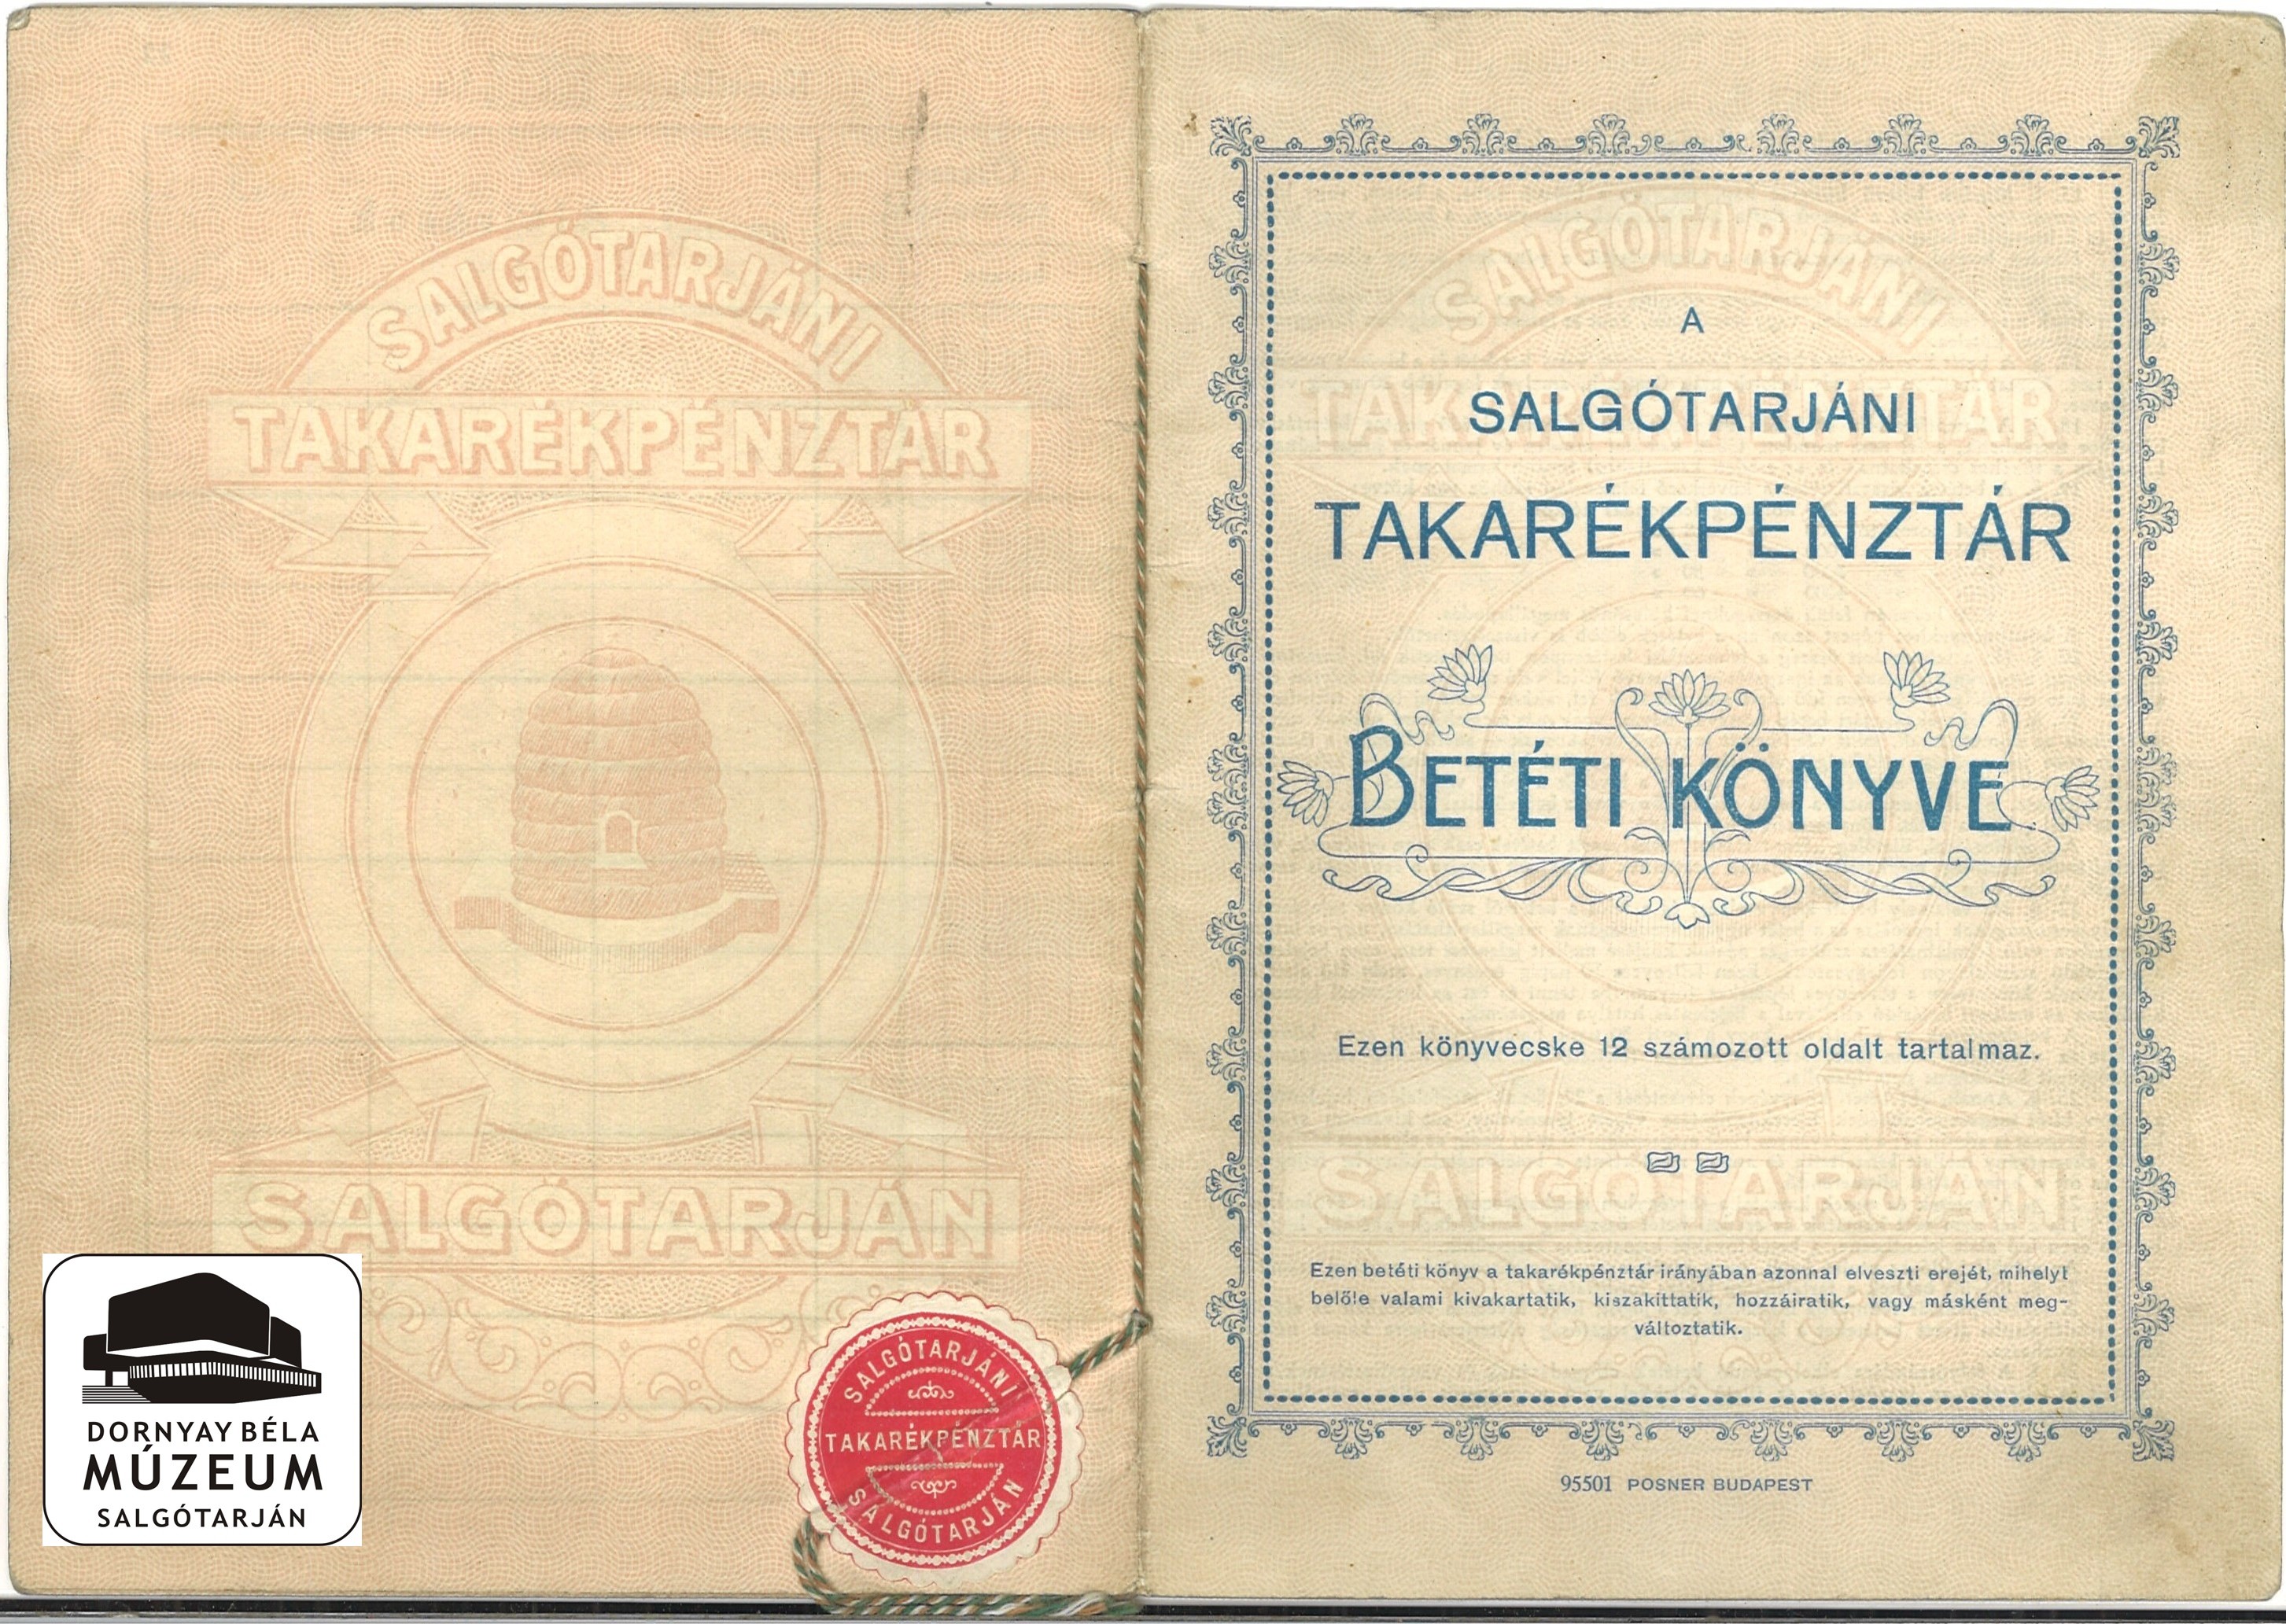 A Salgótarjáni Takarékpénztár betéti könyve. Demény Anna (Dornyay Béla Múzeum, Salgótarján CC BY-NC-SA)